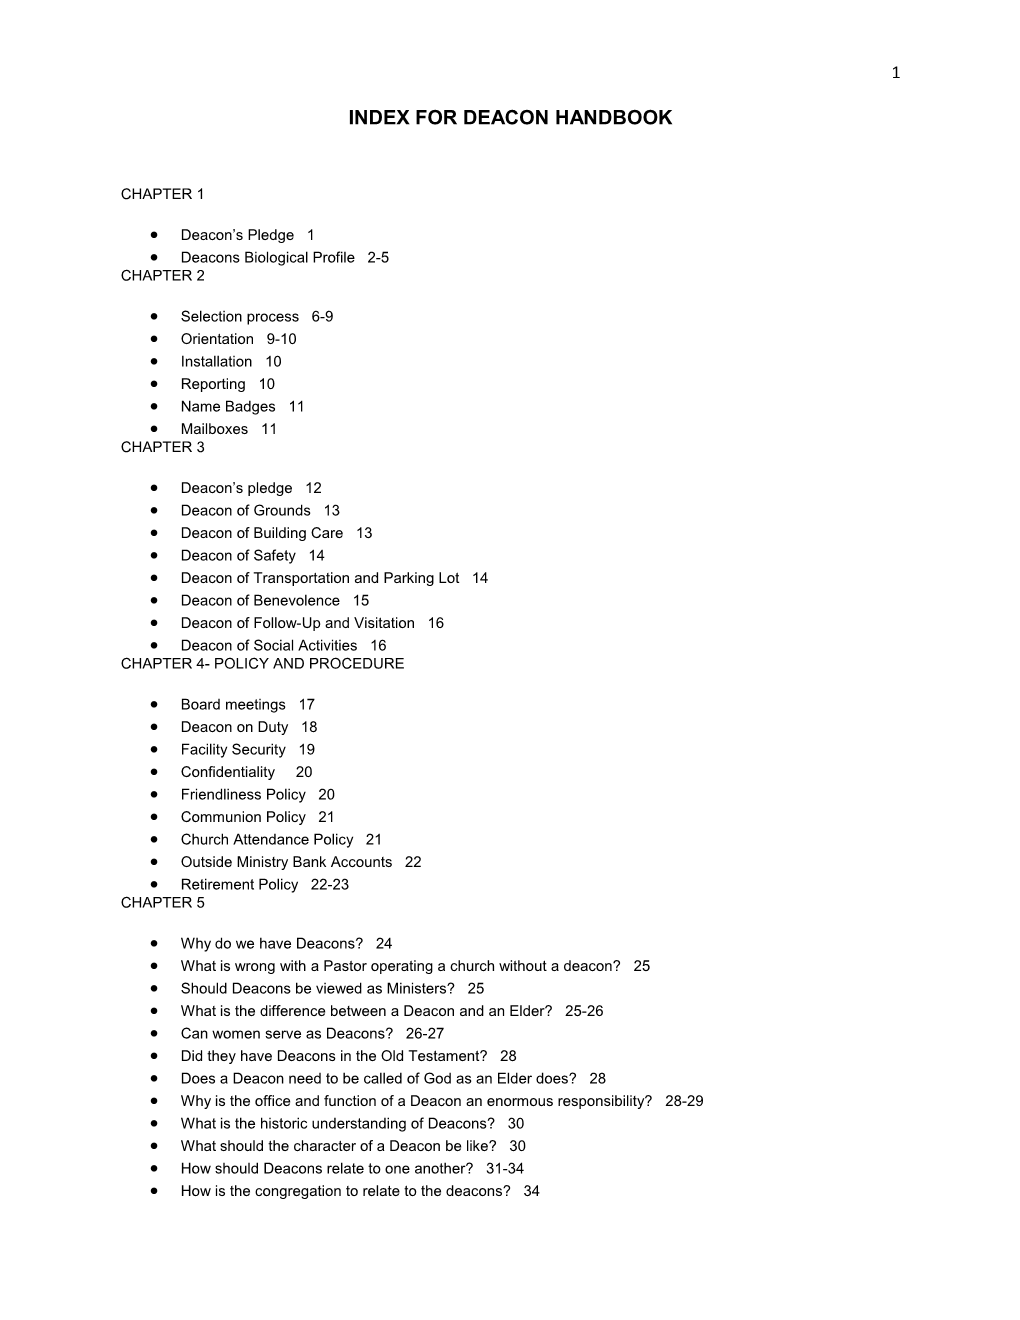 Index for Deacon Handbook